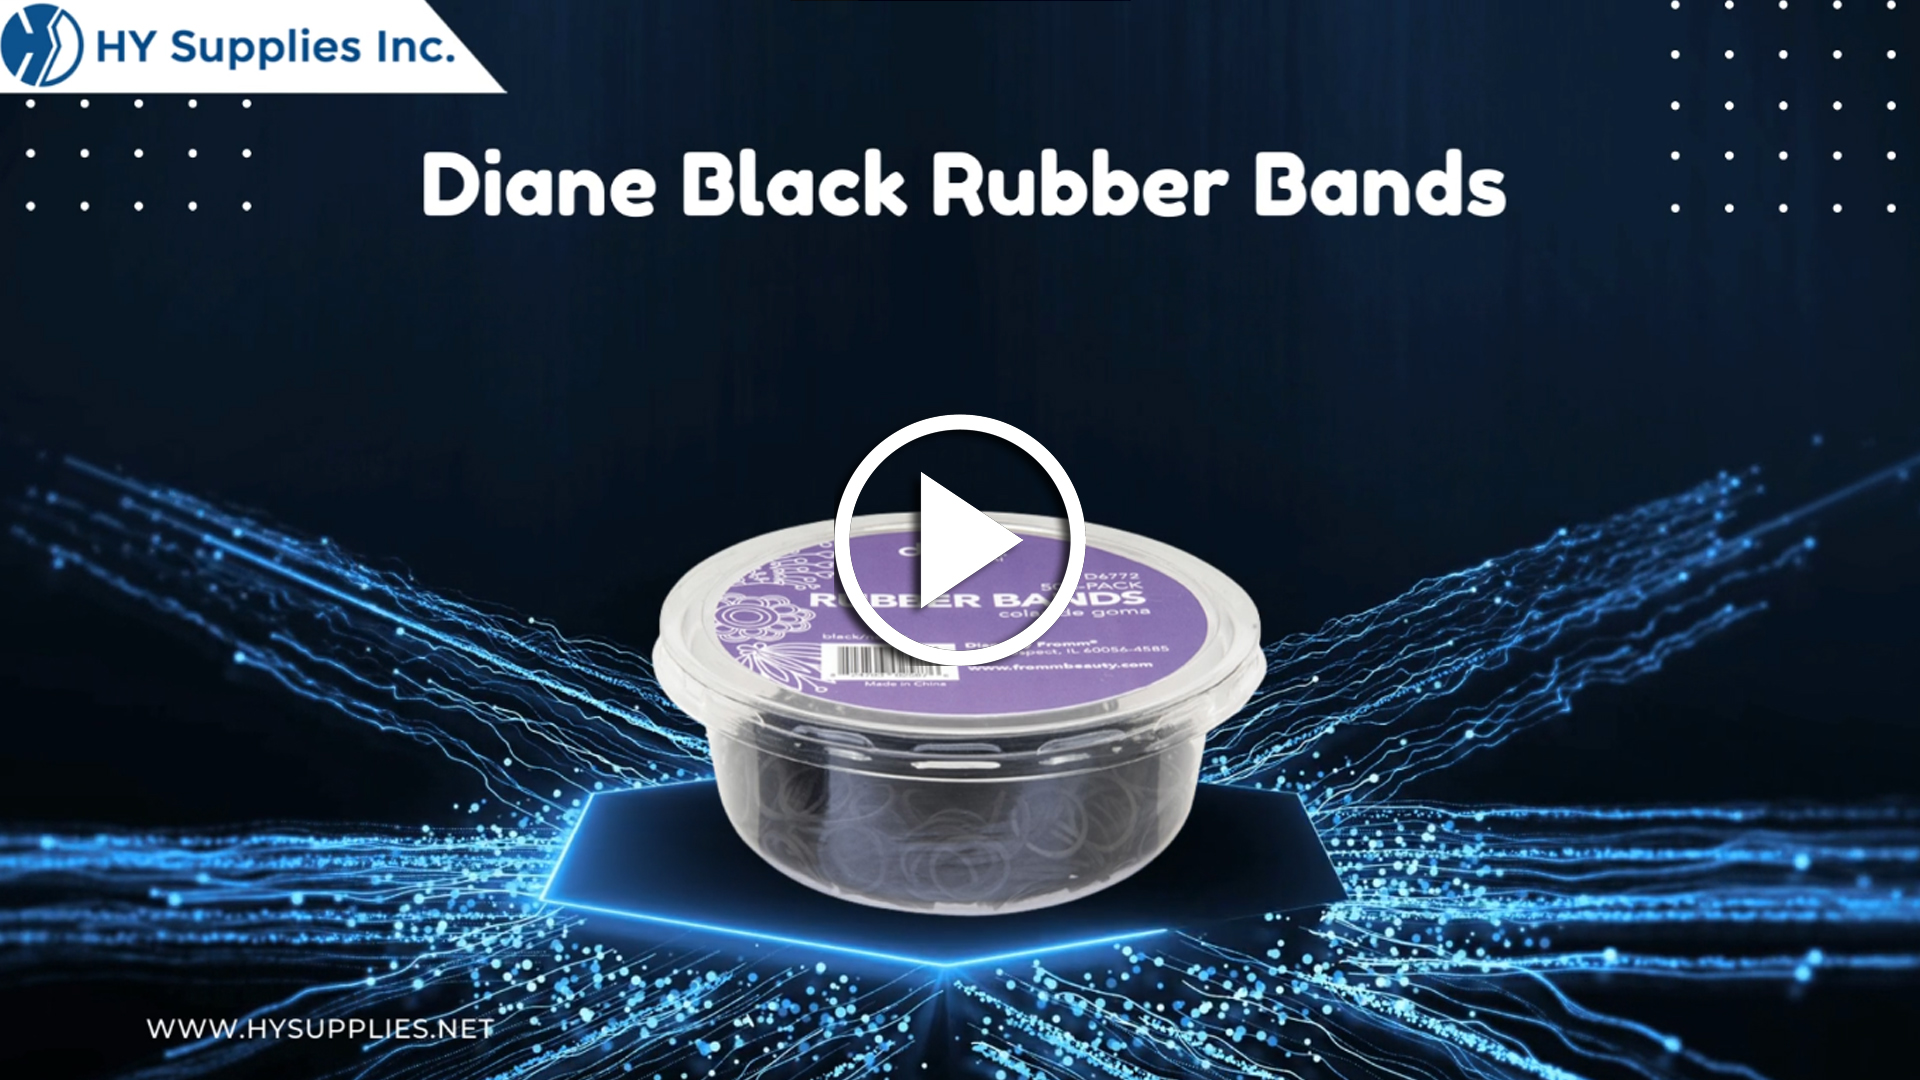 Diane Black Rubber Bands